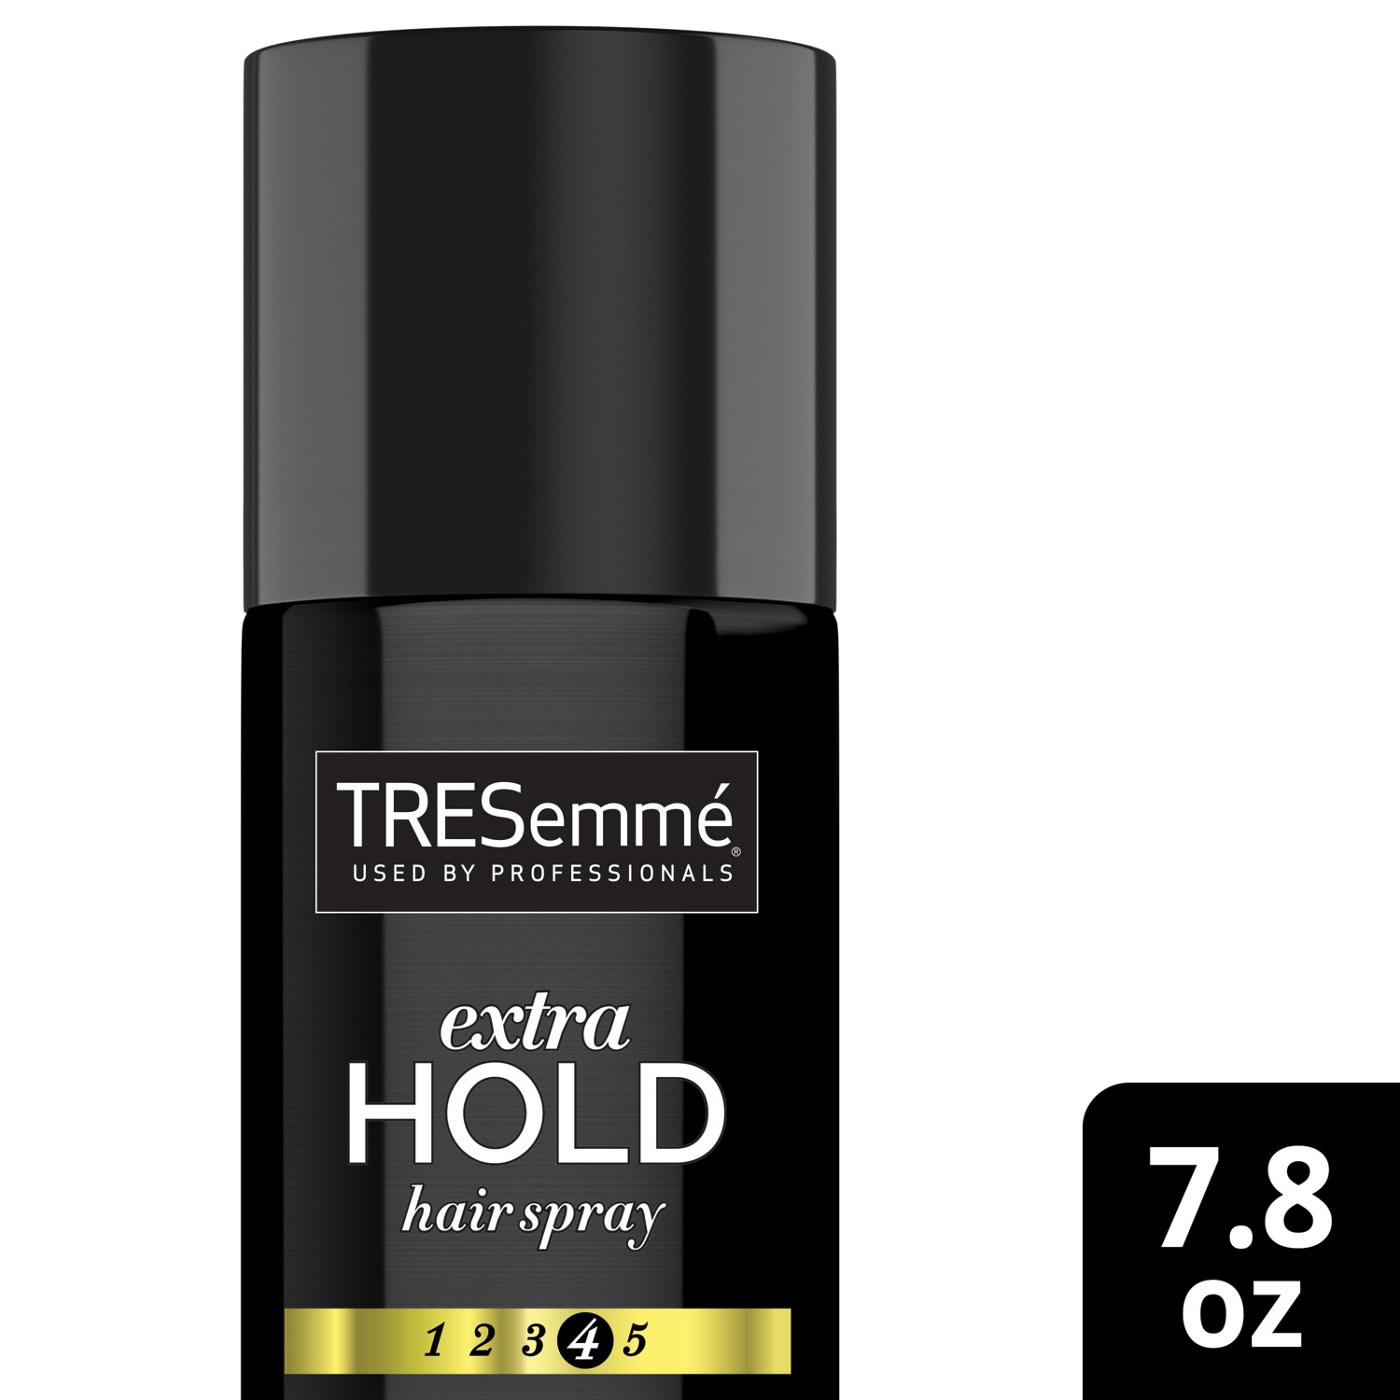 TRESemmé Extra Hold Hair Spray; image 3 of 3